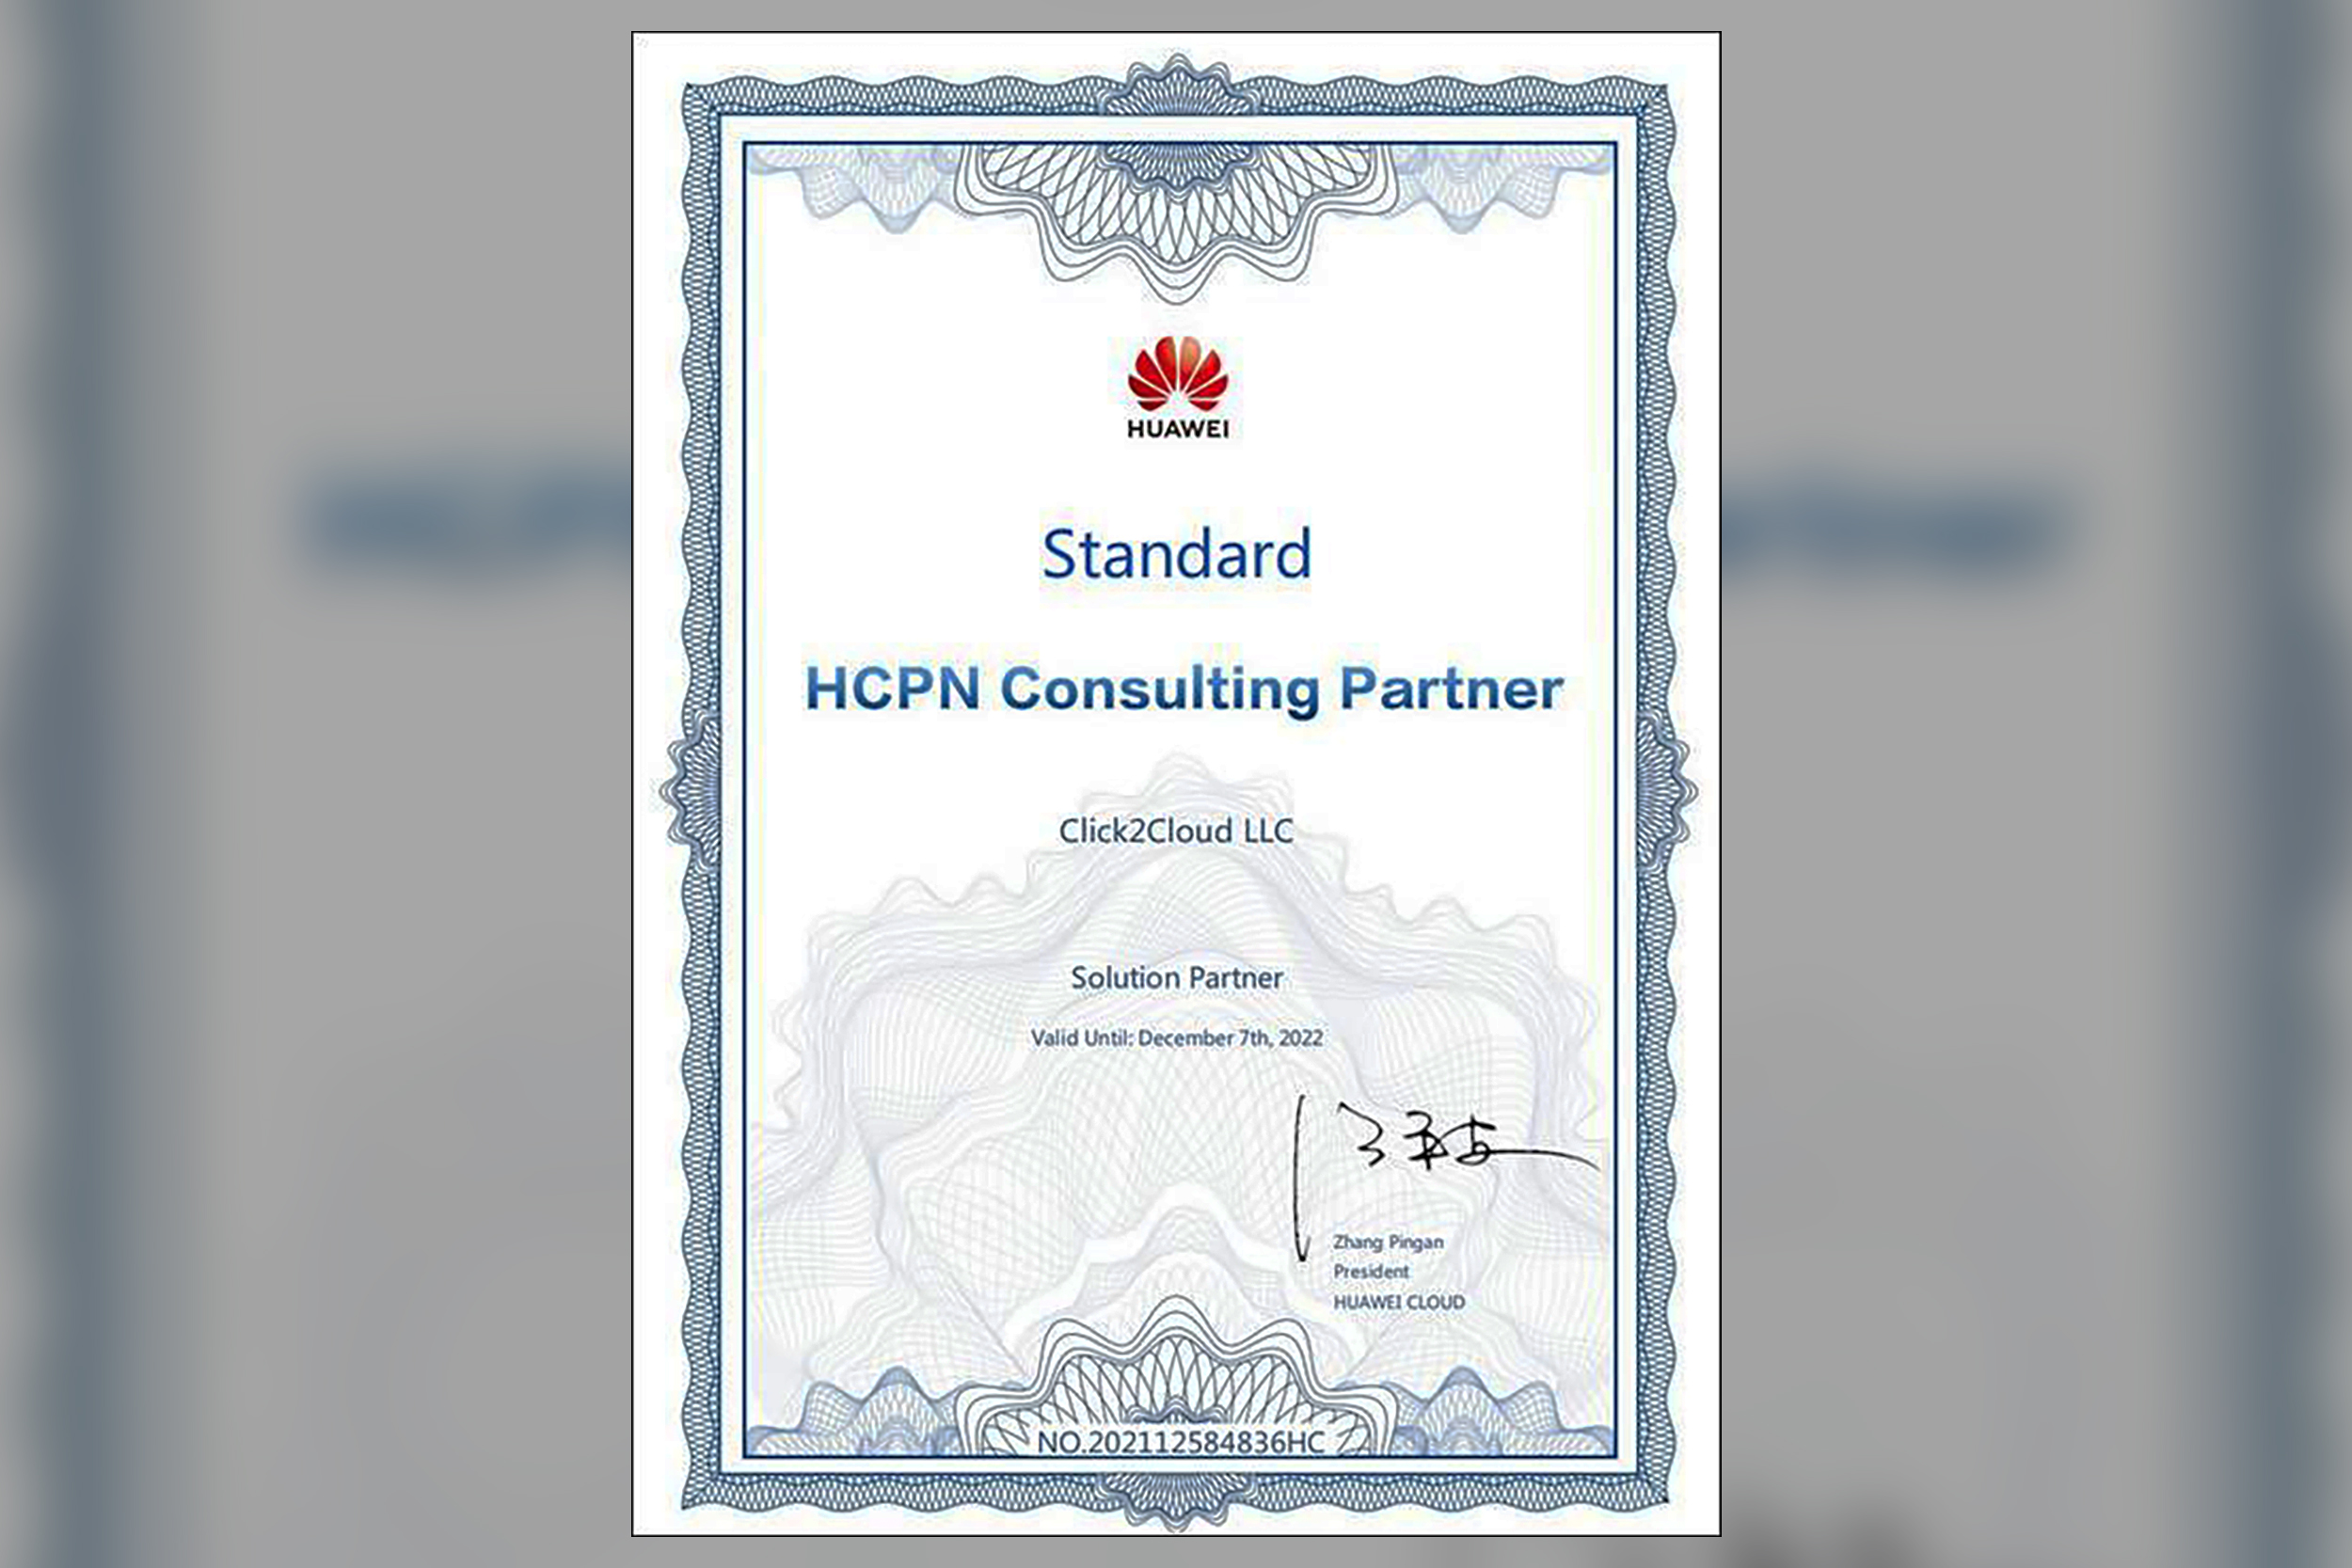 Click2Cloud's Achievements- HCPN Consulting Partner Program - Solution Partner